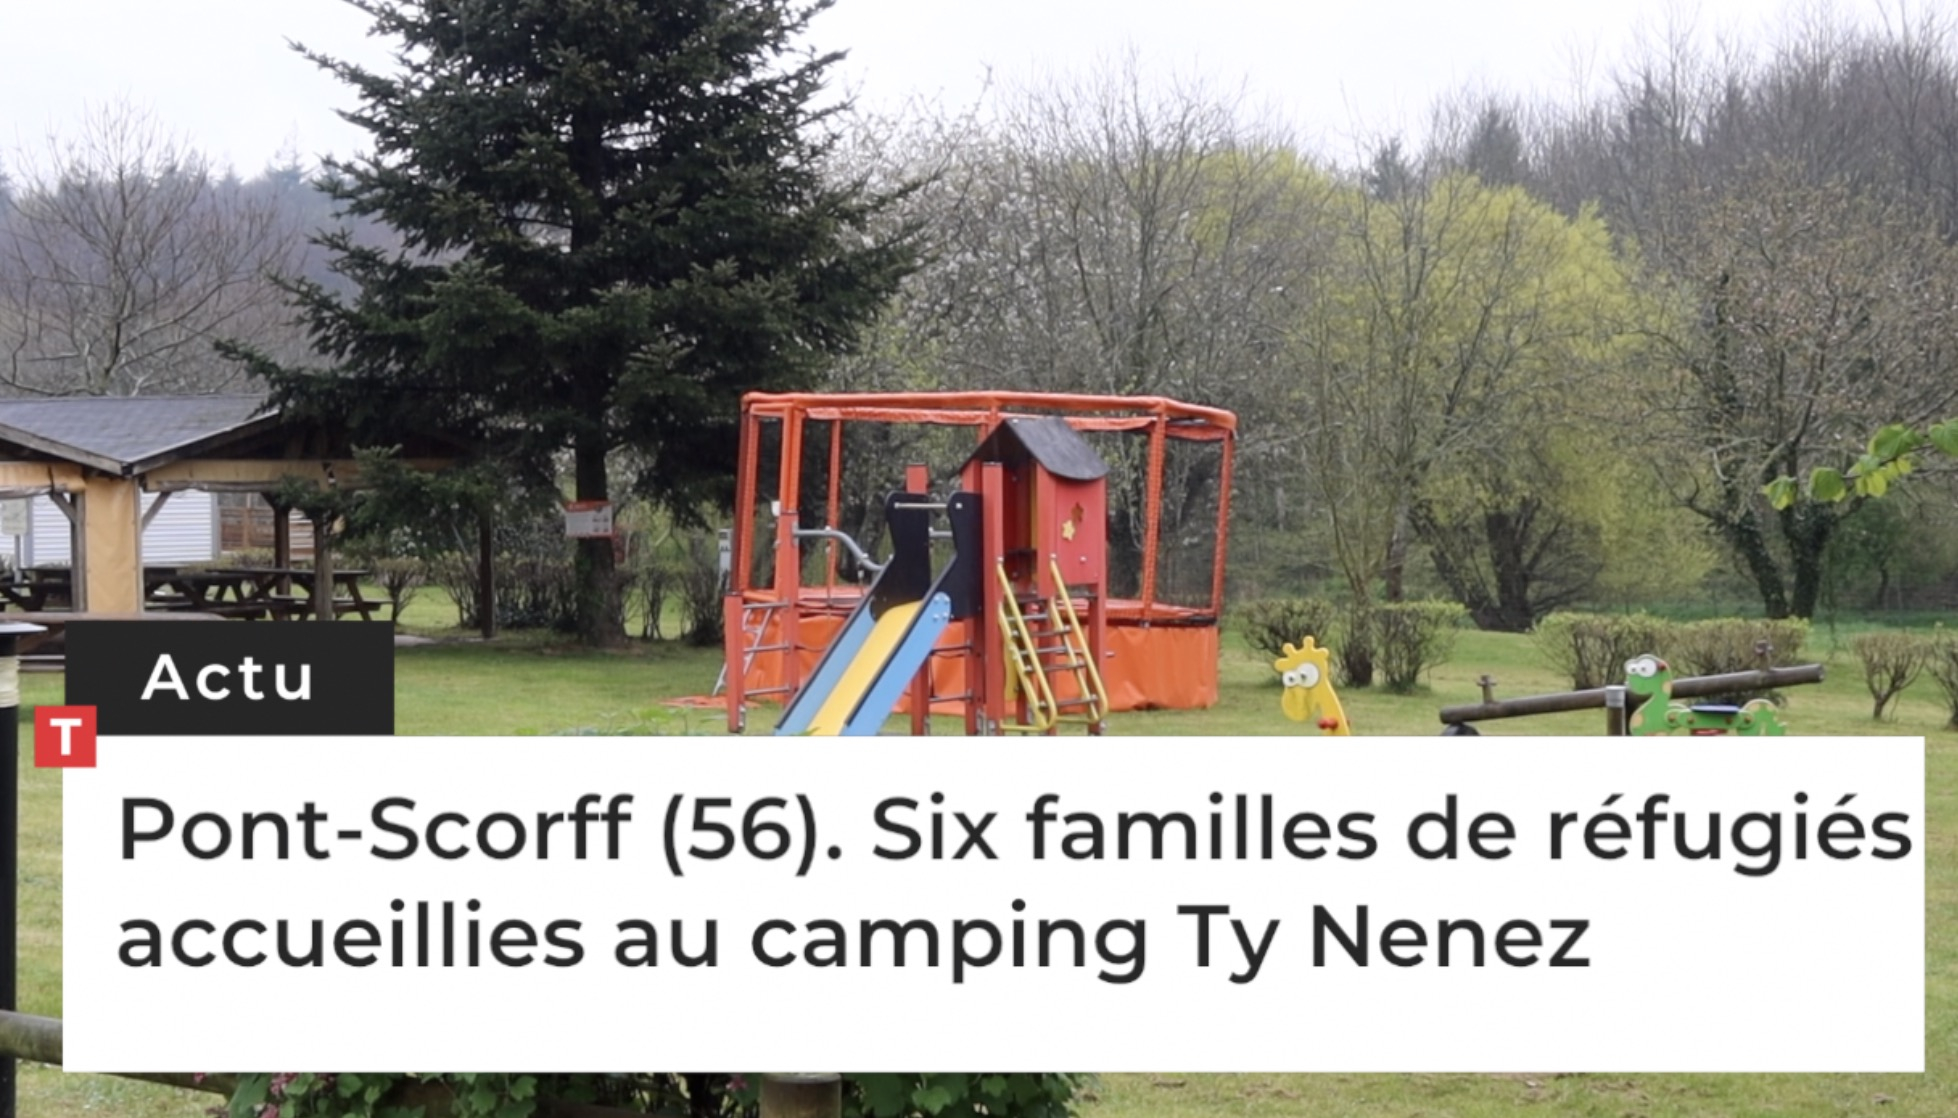 Pont-Scorff (56). Six familles de réfugiés accueillies au camping Ty Nenez  (Le Télégramme)